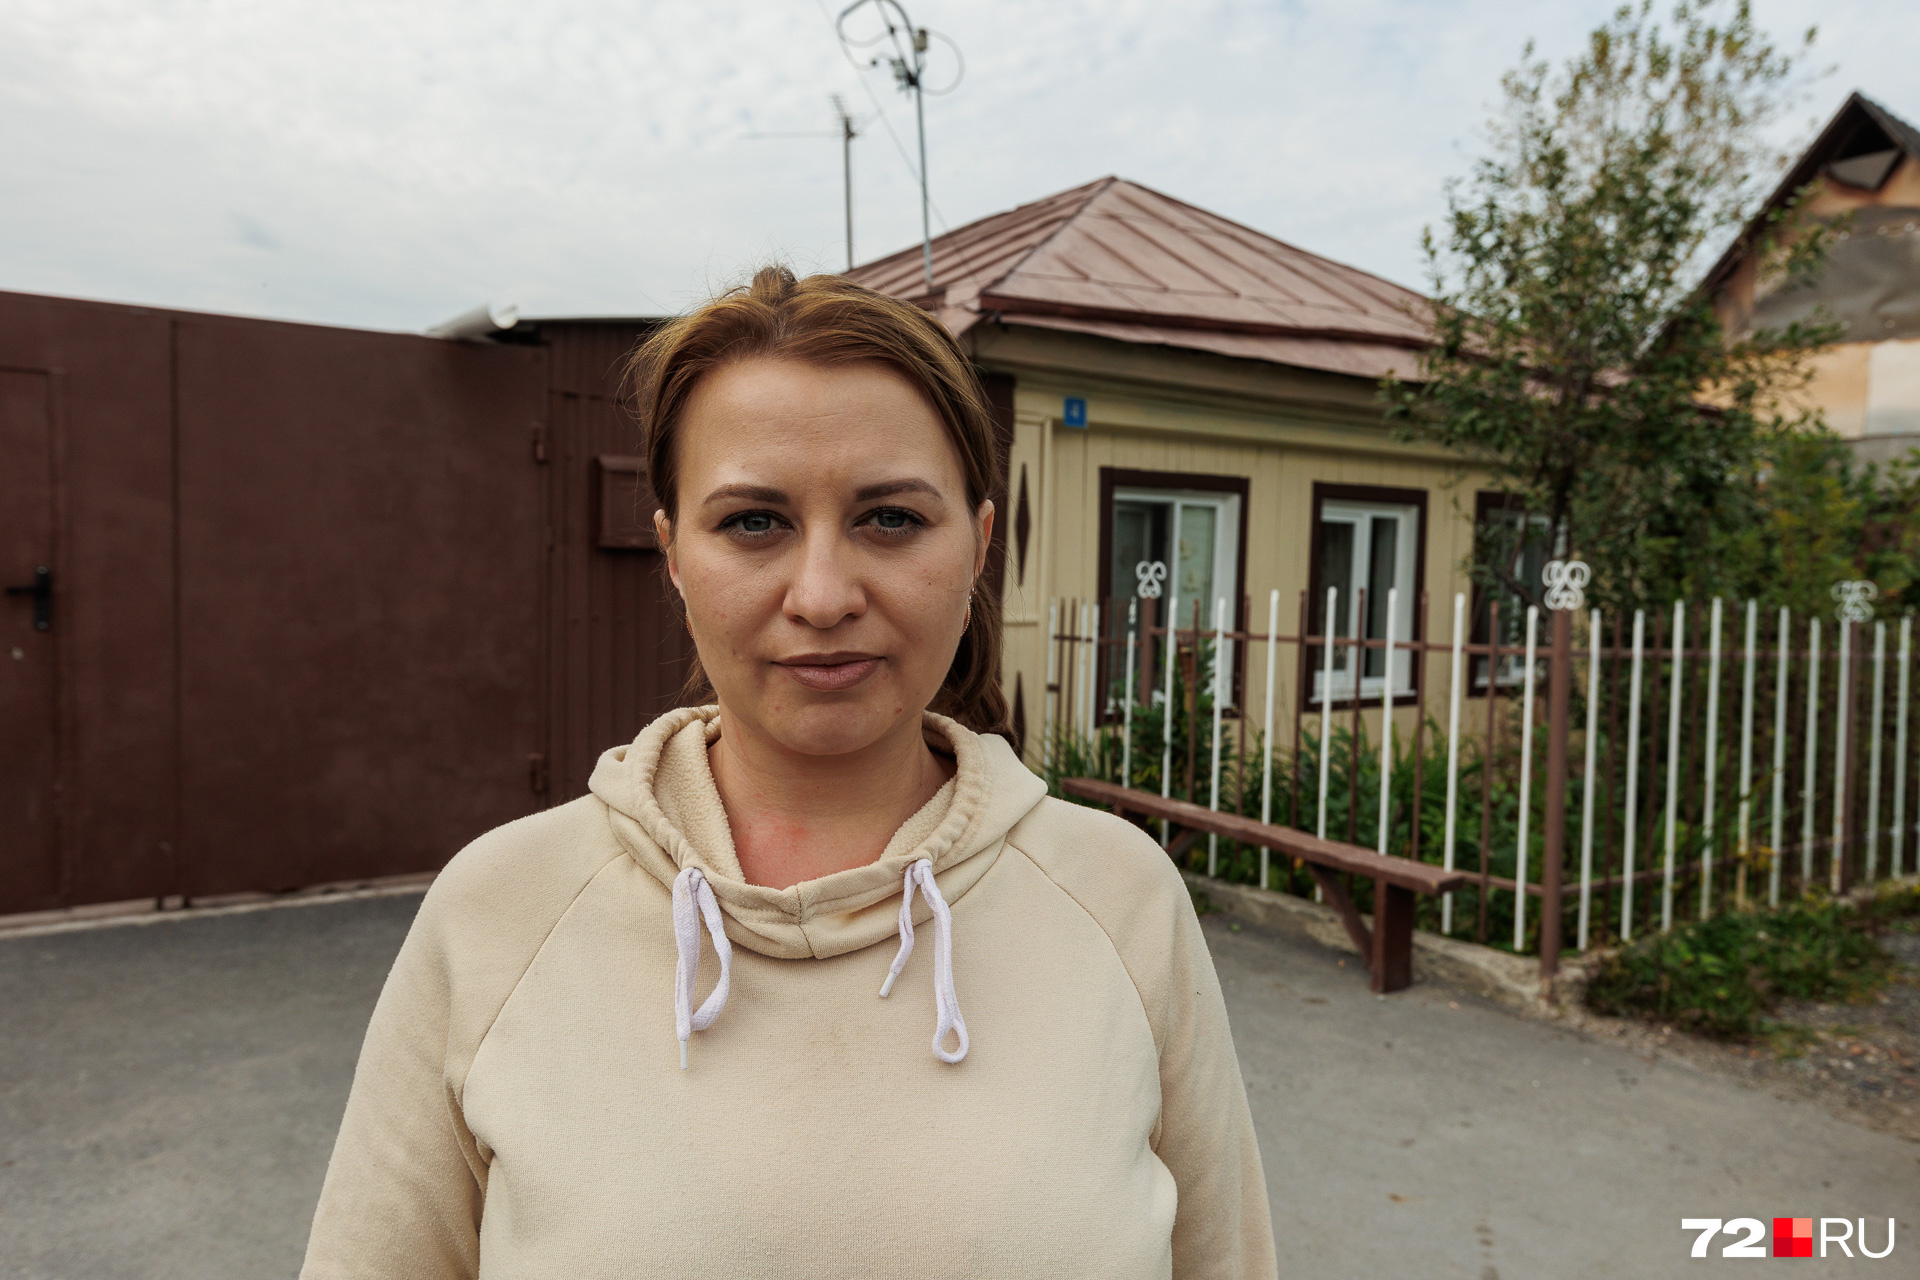 Семья Инны взяла ипотеку и вложила пять миллионов рублей в покупку дома. Ее ребенок хочет поехать на море, но из-за кредита они не могут себе этого позволить